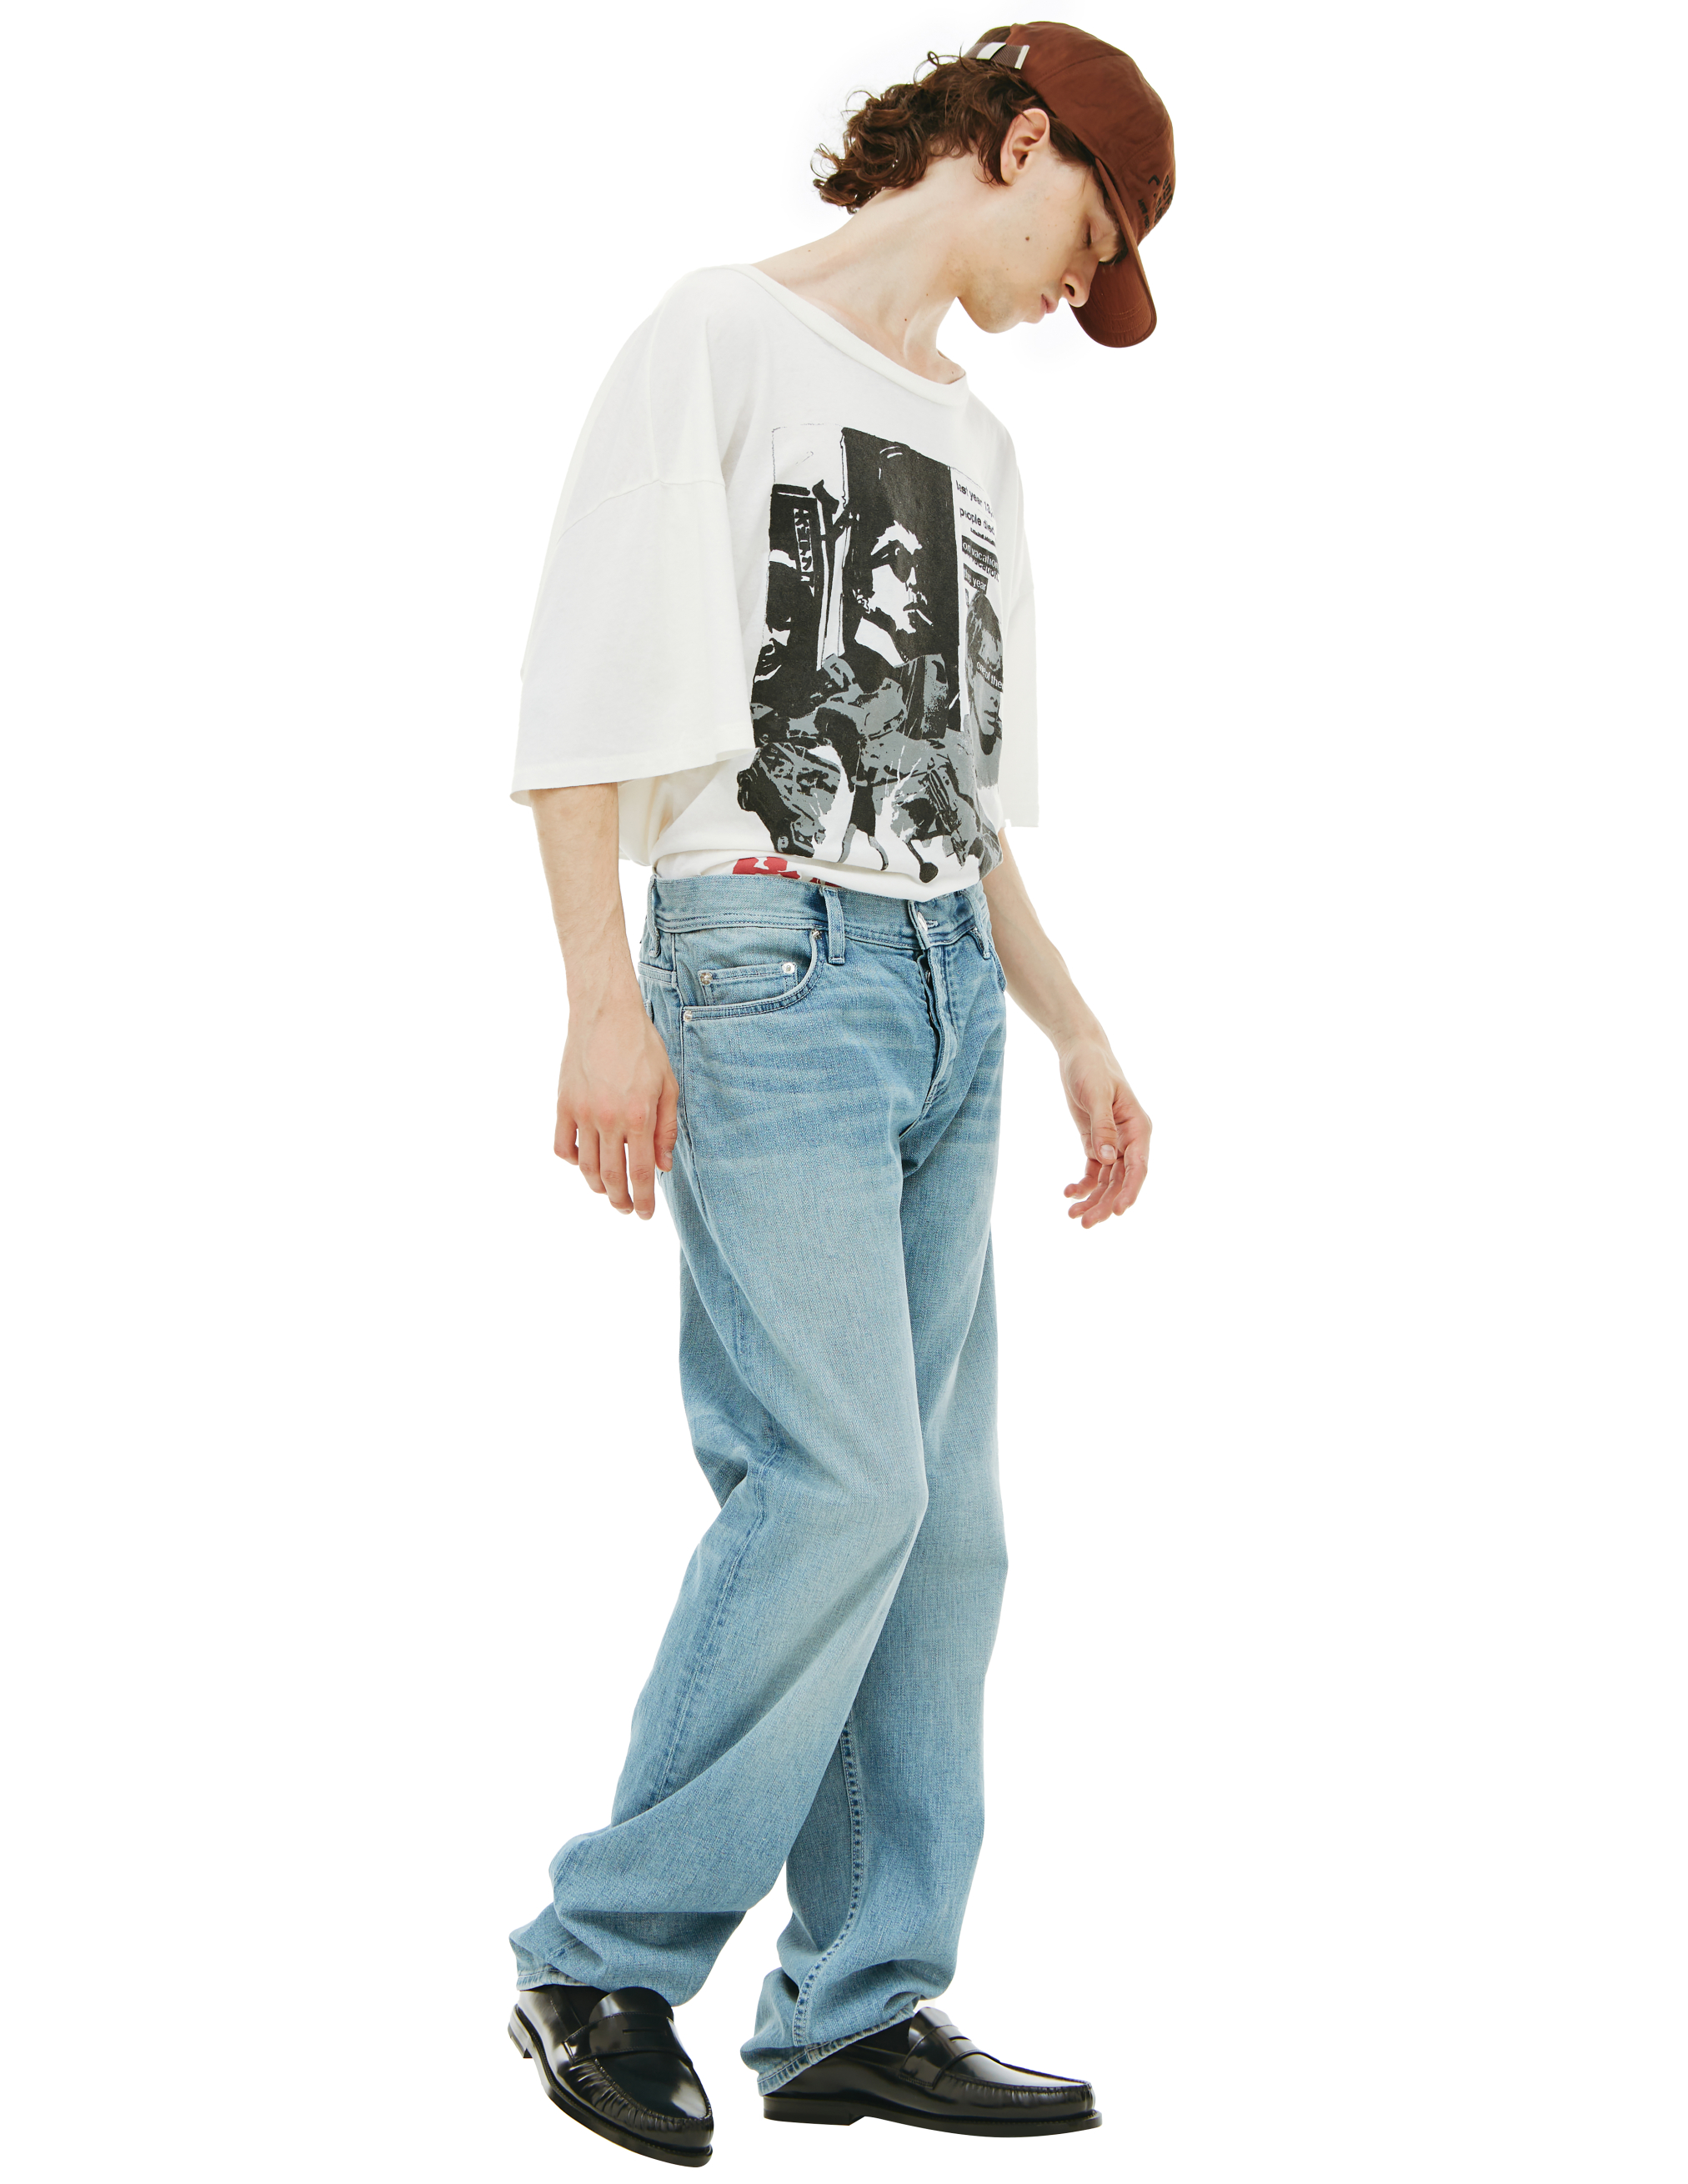 Прямые джинсы с выстиранным эффектом Enfants Riches Deprimes 050/305, размер 34